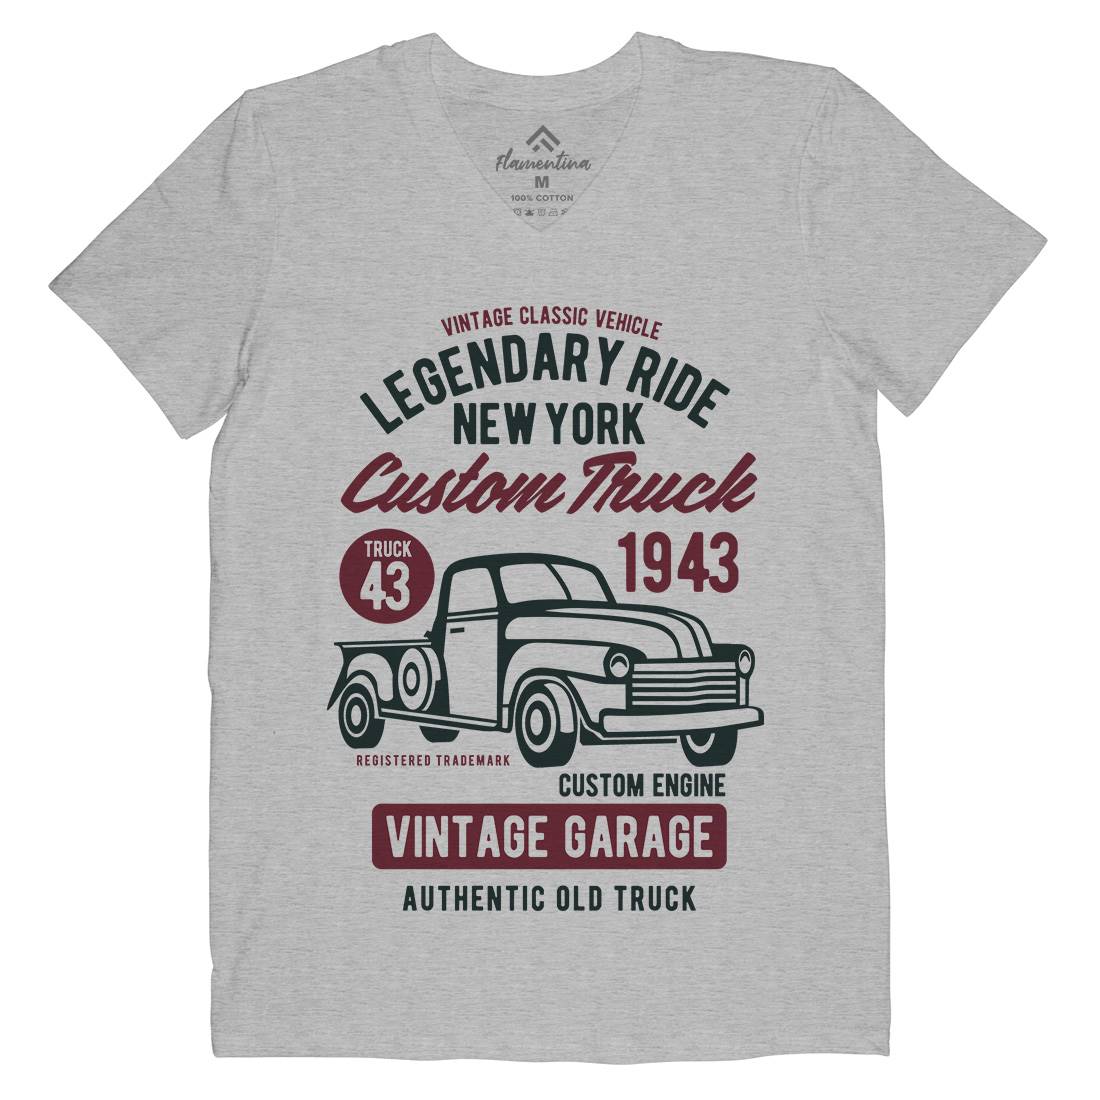 Legendary Ride Custom Truck Mens V-Neck T-Shirt Cars B415